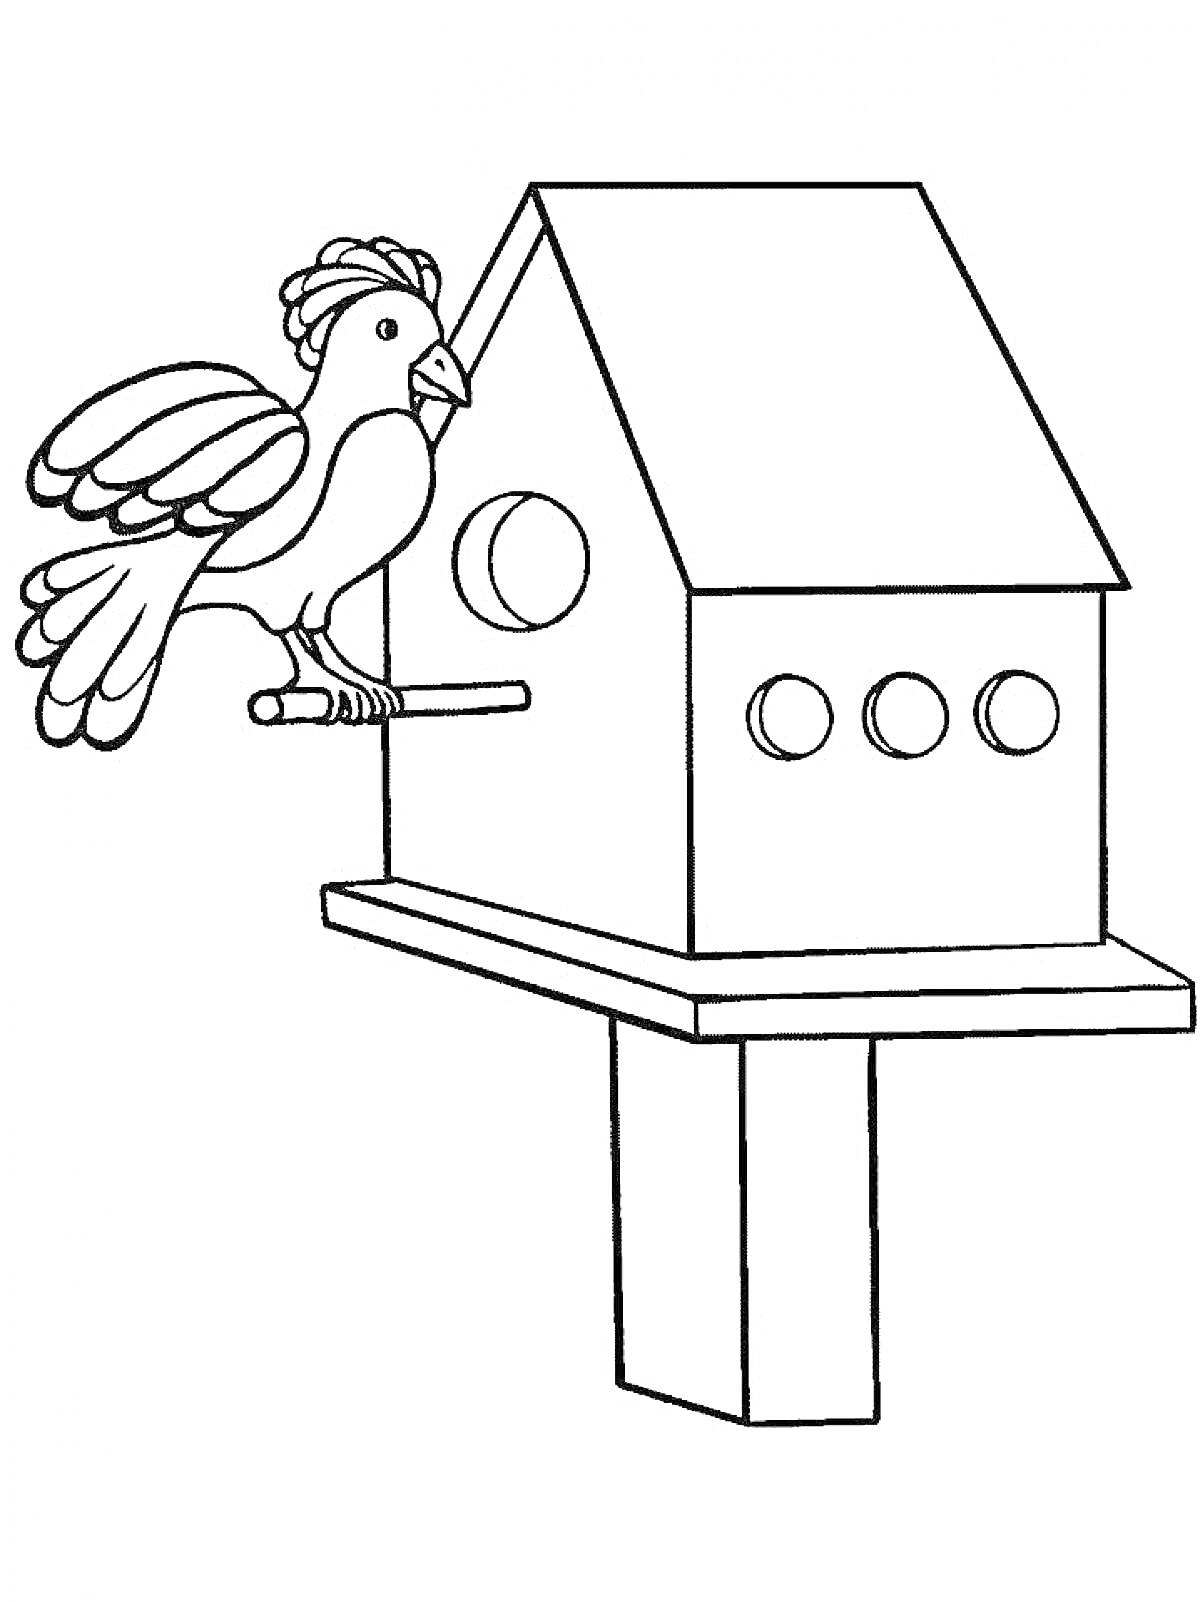 Раскраска Кормушка для птиц с птицей, сидящей на насесте